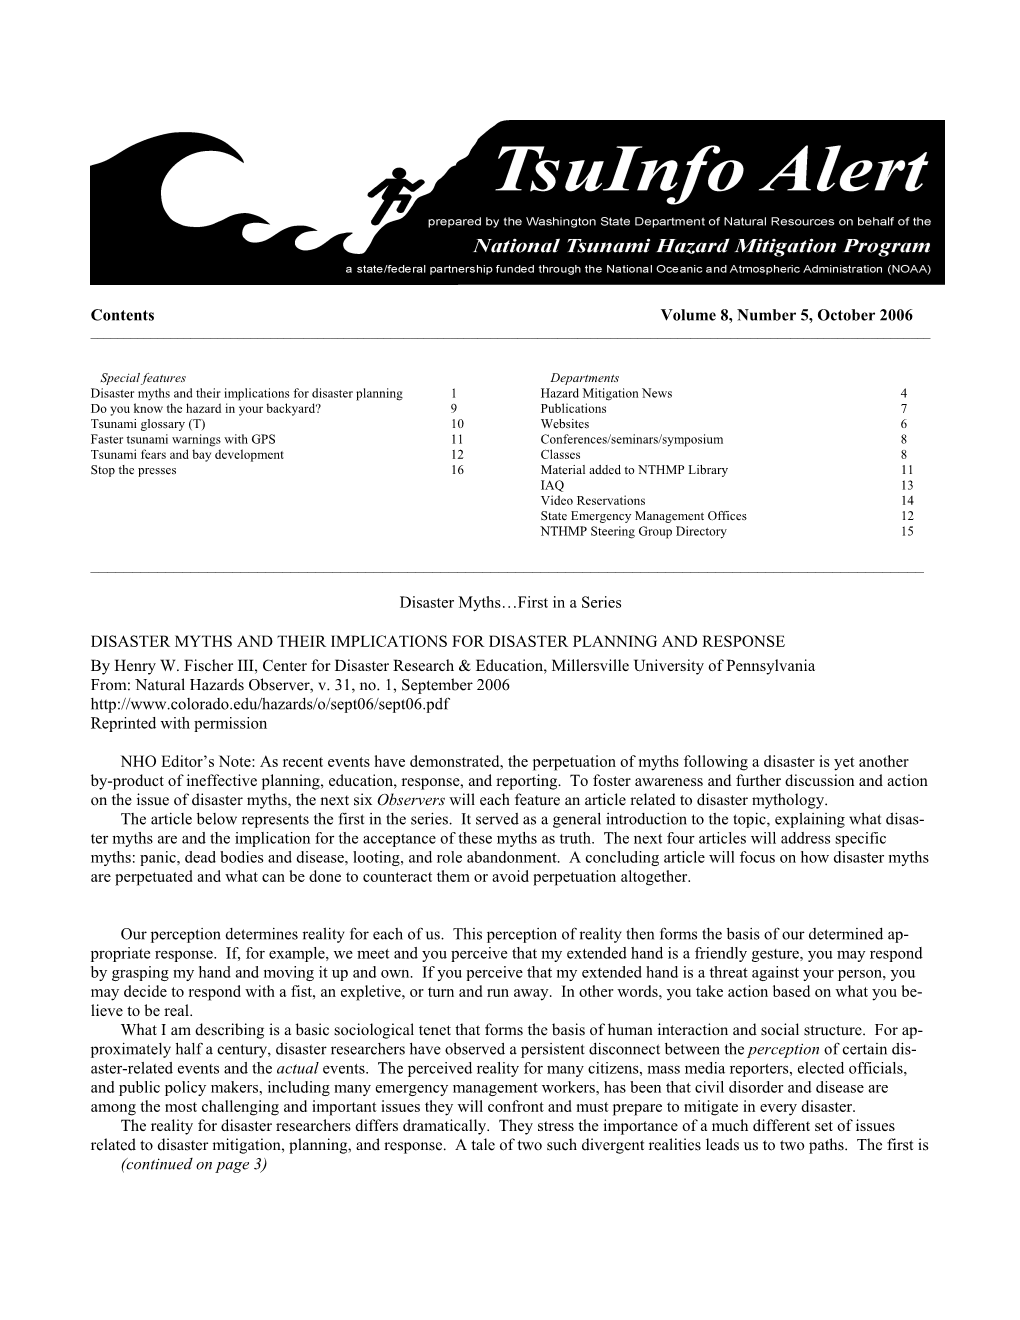 Tsuinfo Alert, October 2006